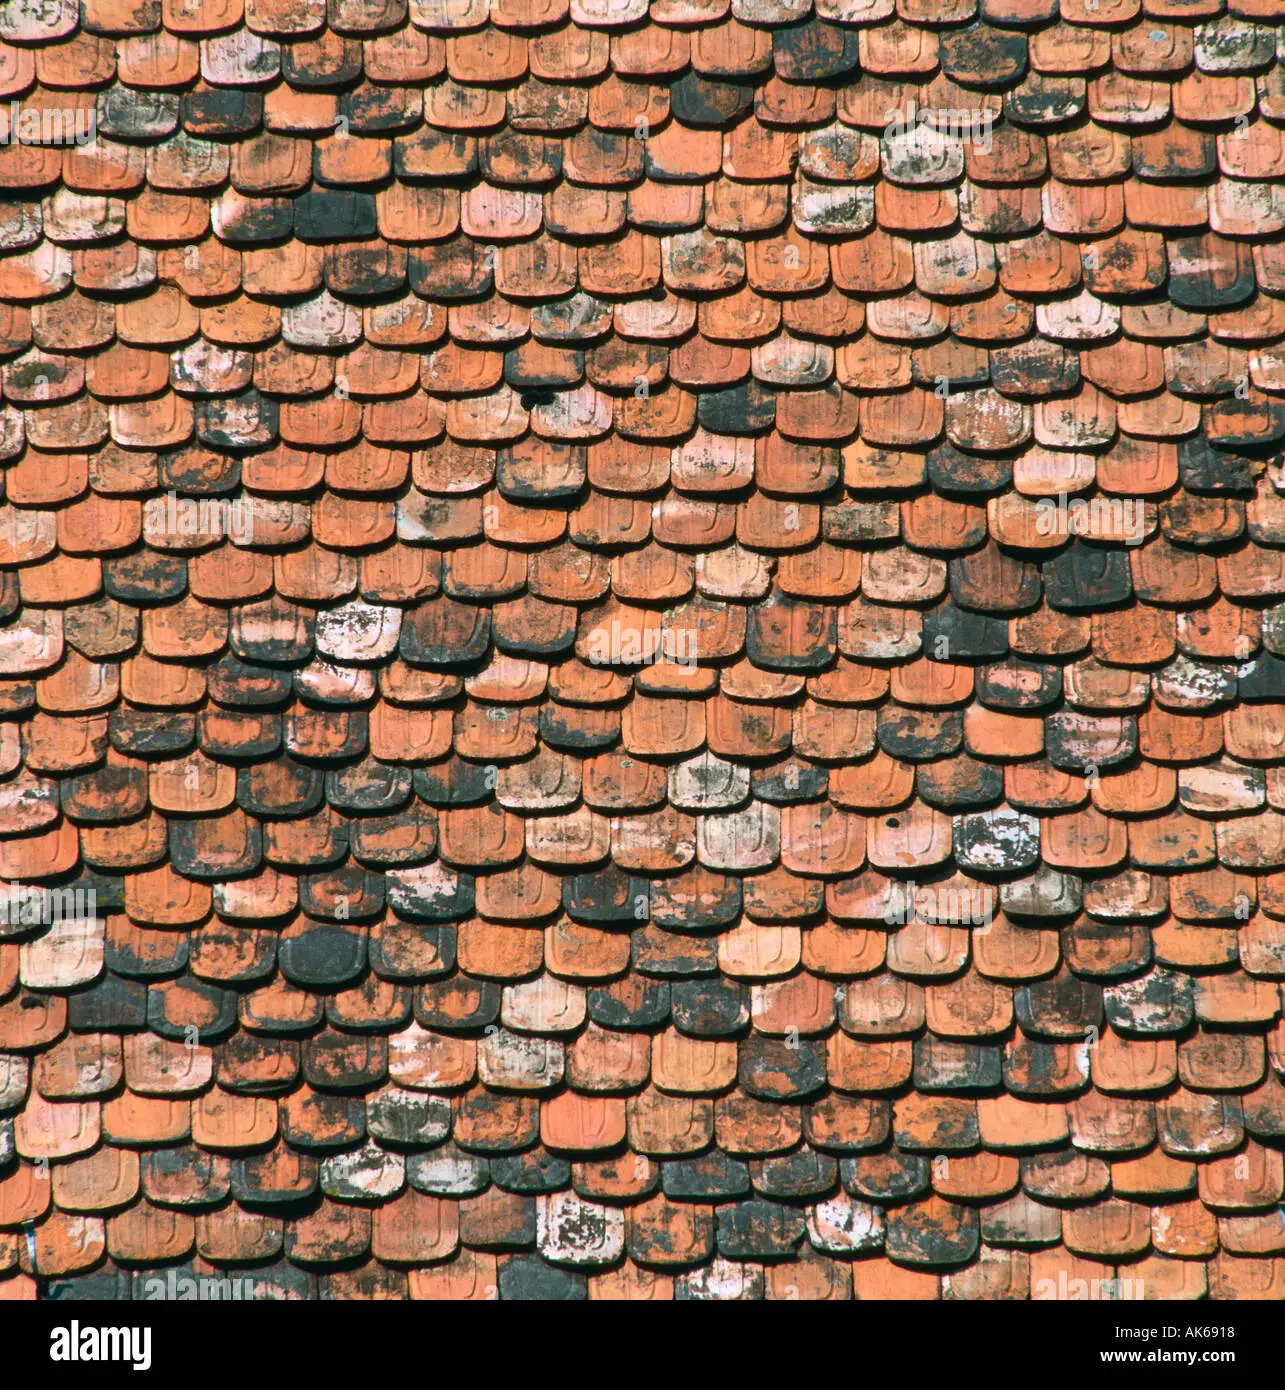 Roofing tiles Biberschwanz Dachziegel Europa europe Background Stock ...